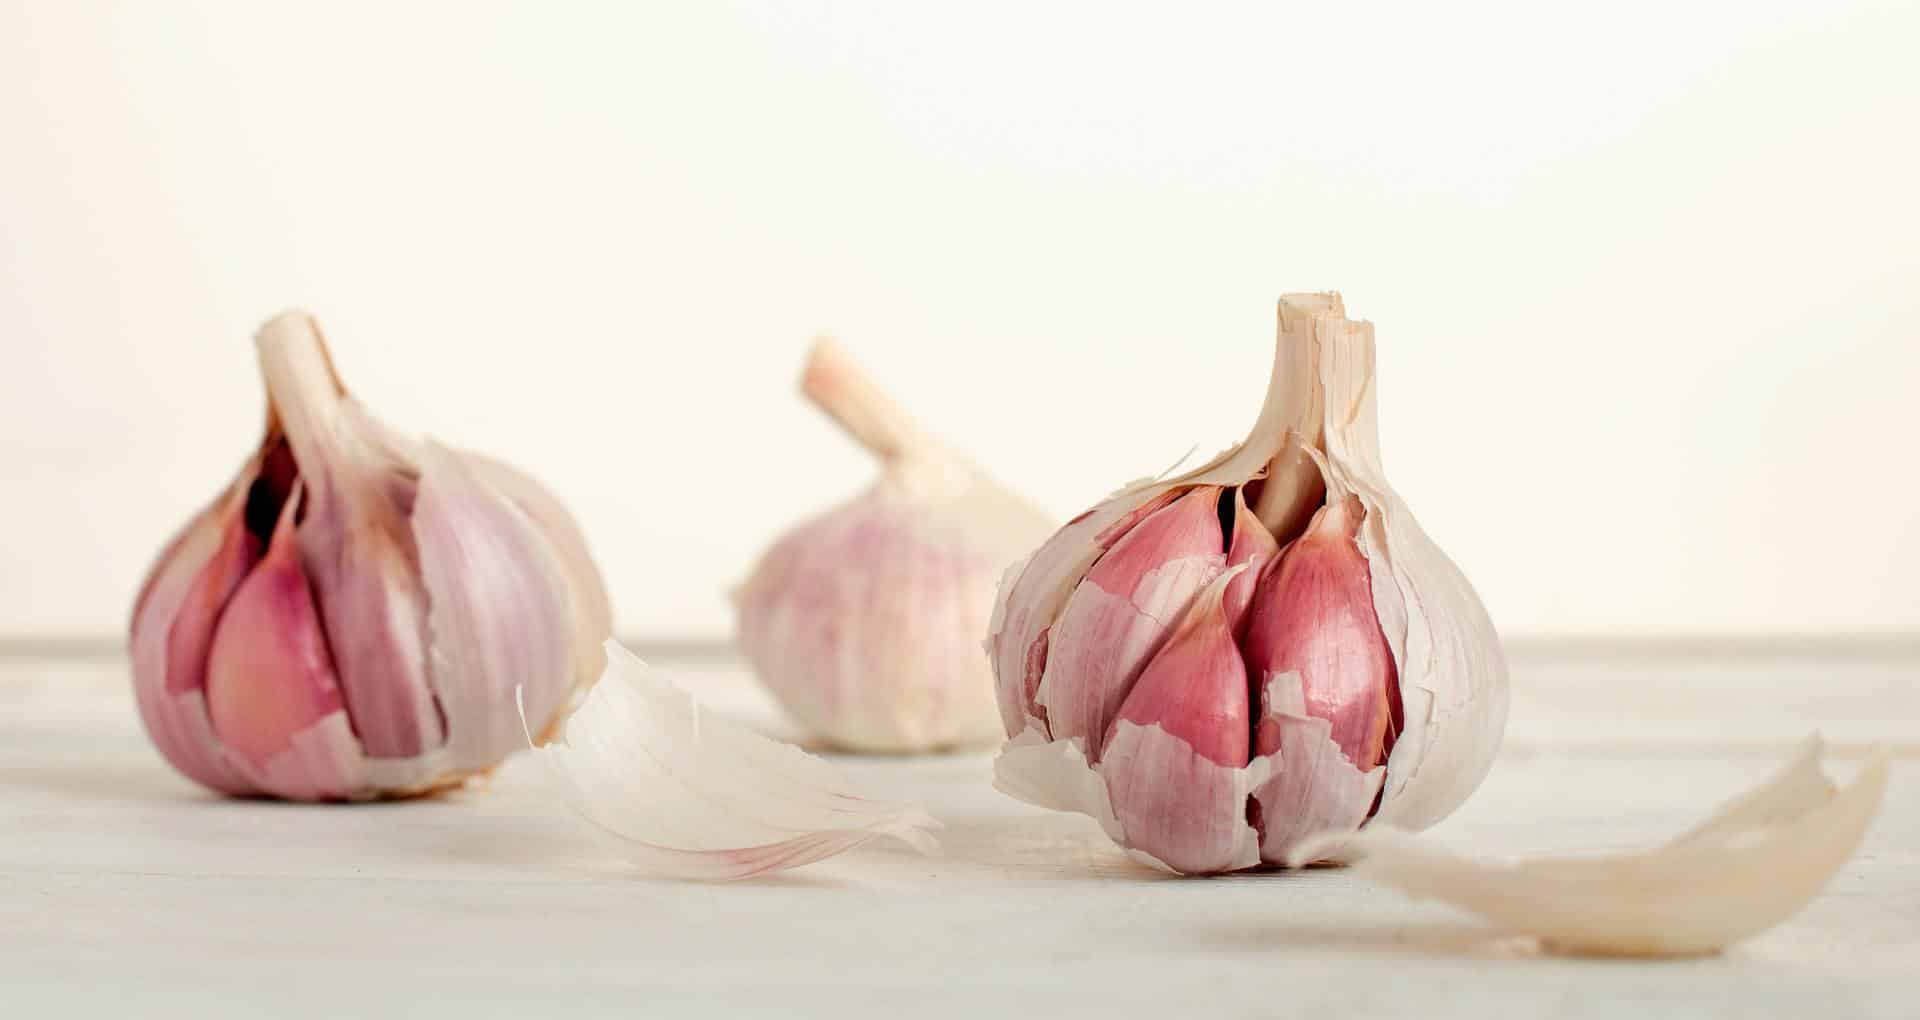 Peeling Garlic